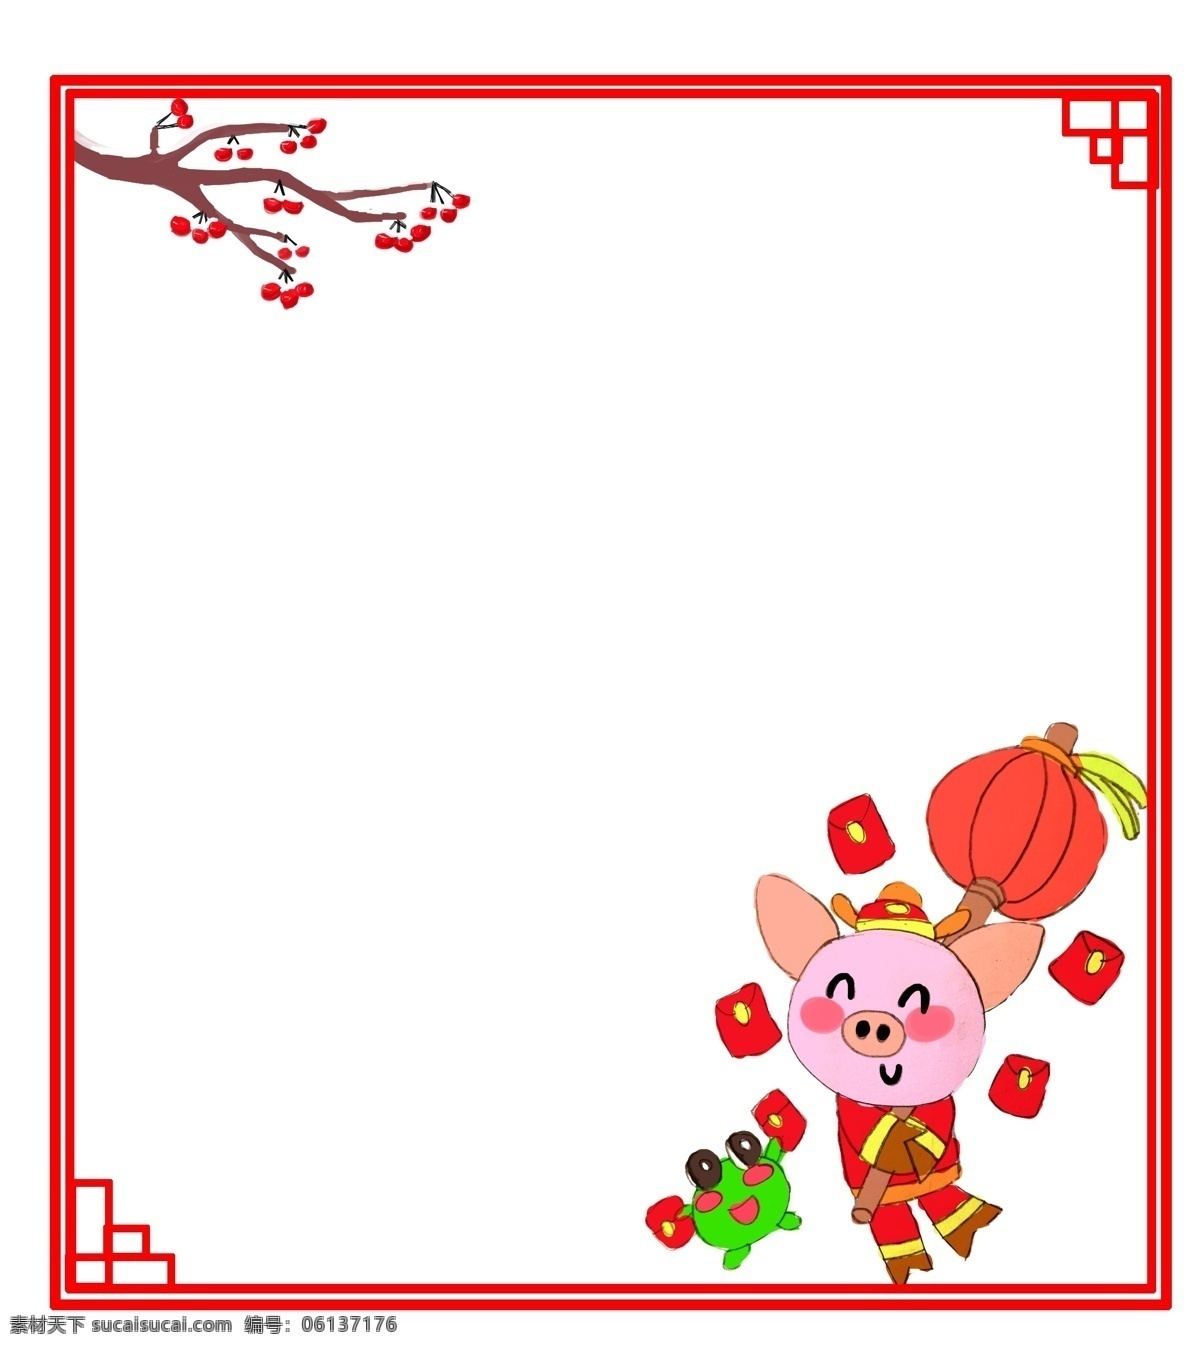 边框 新年 卡通 粉色 猪 收到 红包 卡通手绘 粉色小猪 绿色青蛙 红色灯笼 红包拿来 喜气洋洋 欢度新年